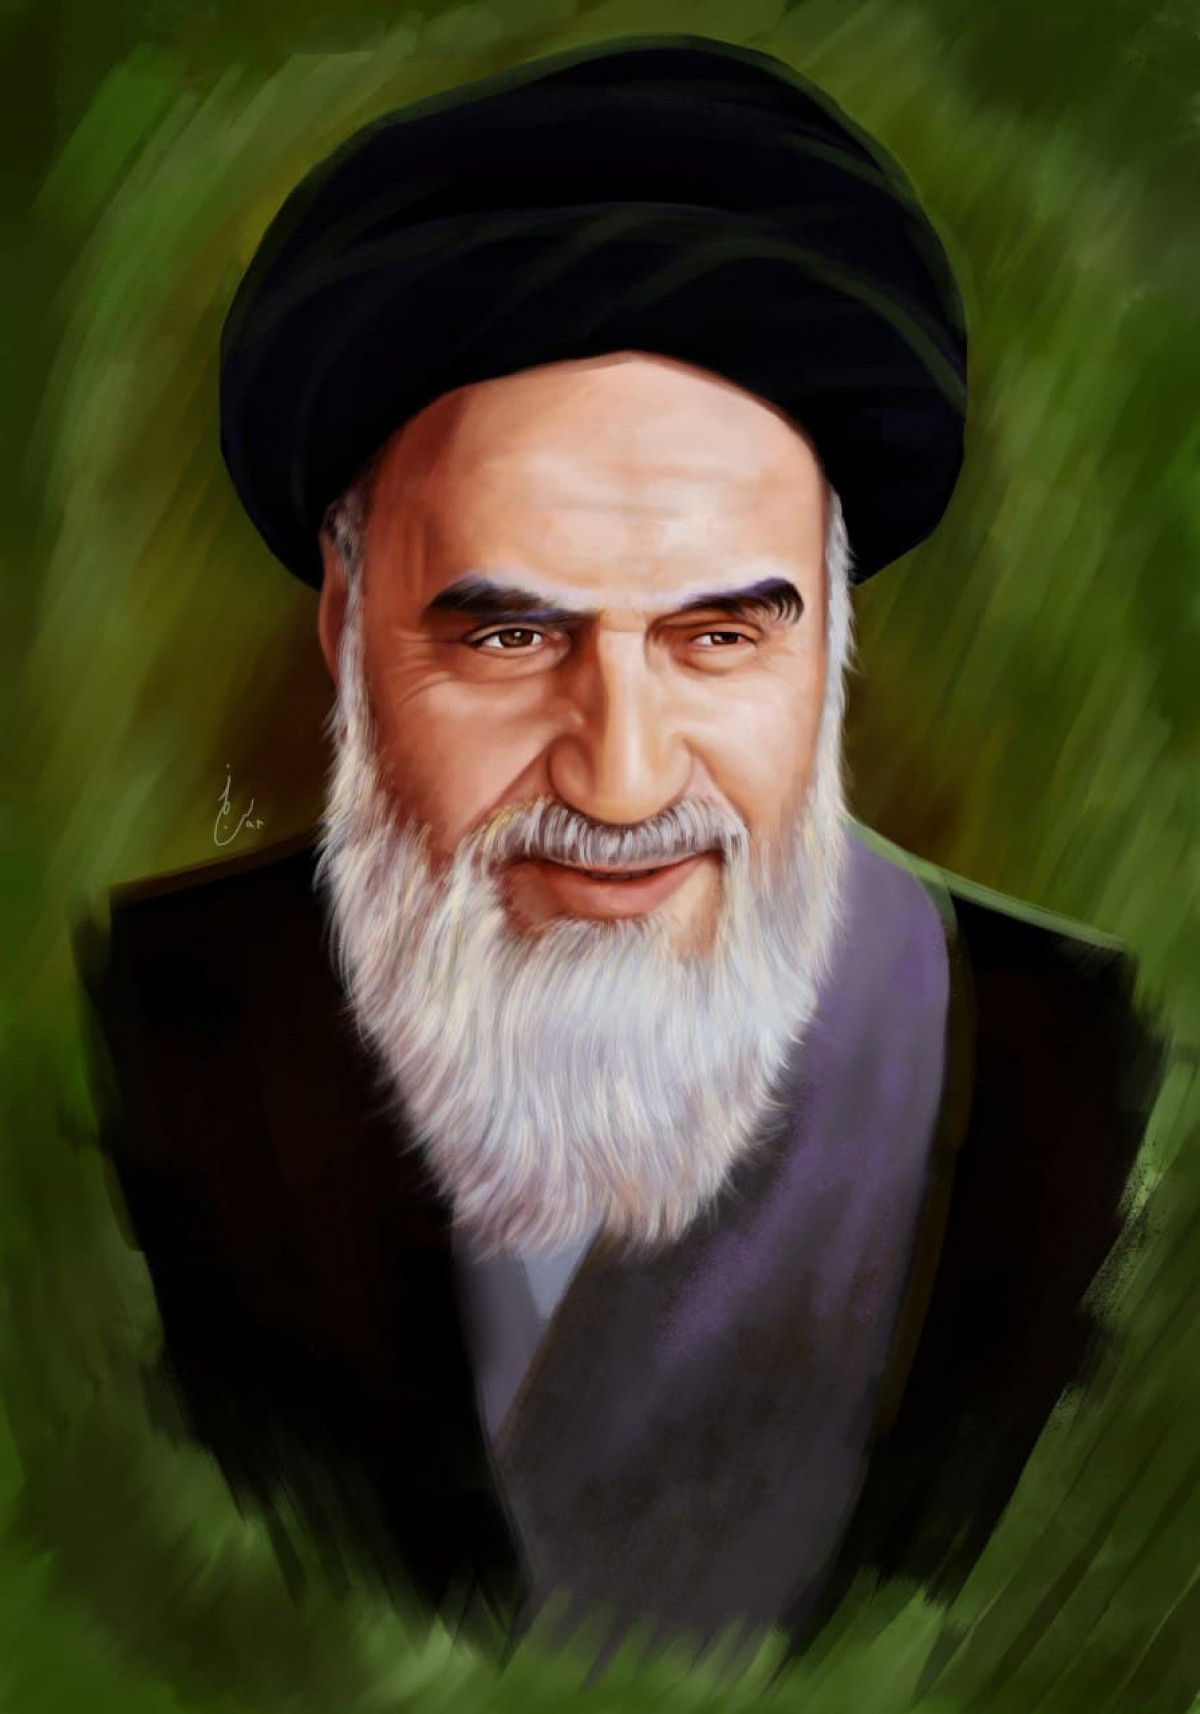 پوستر: سالروز بازگشت رهبر دلها ، به ایران مبارک